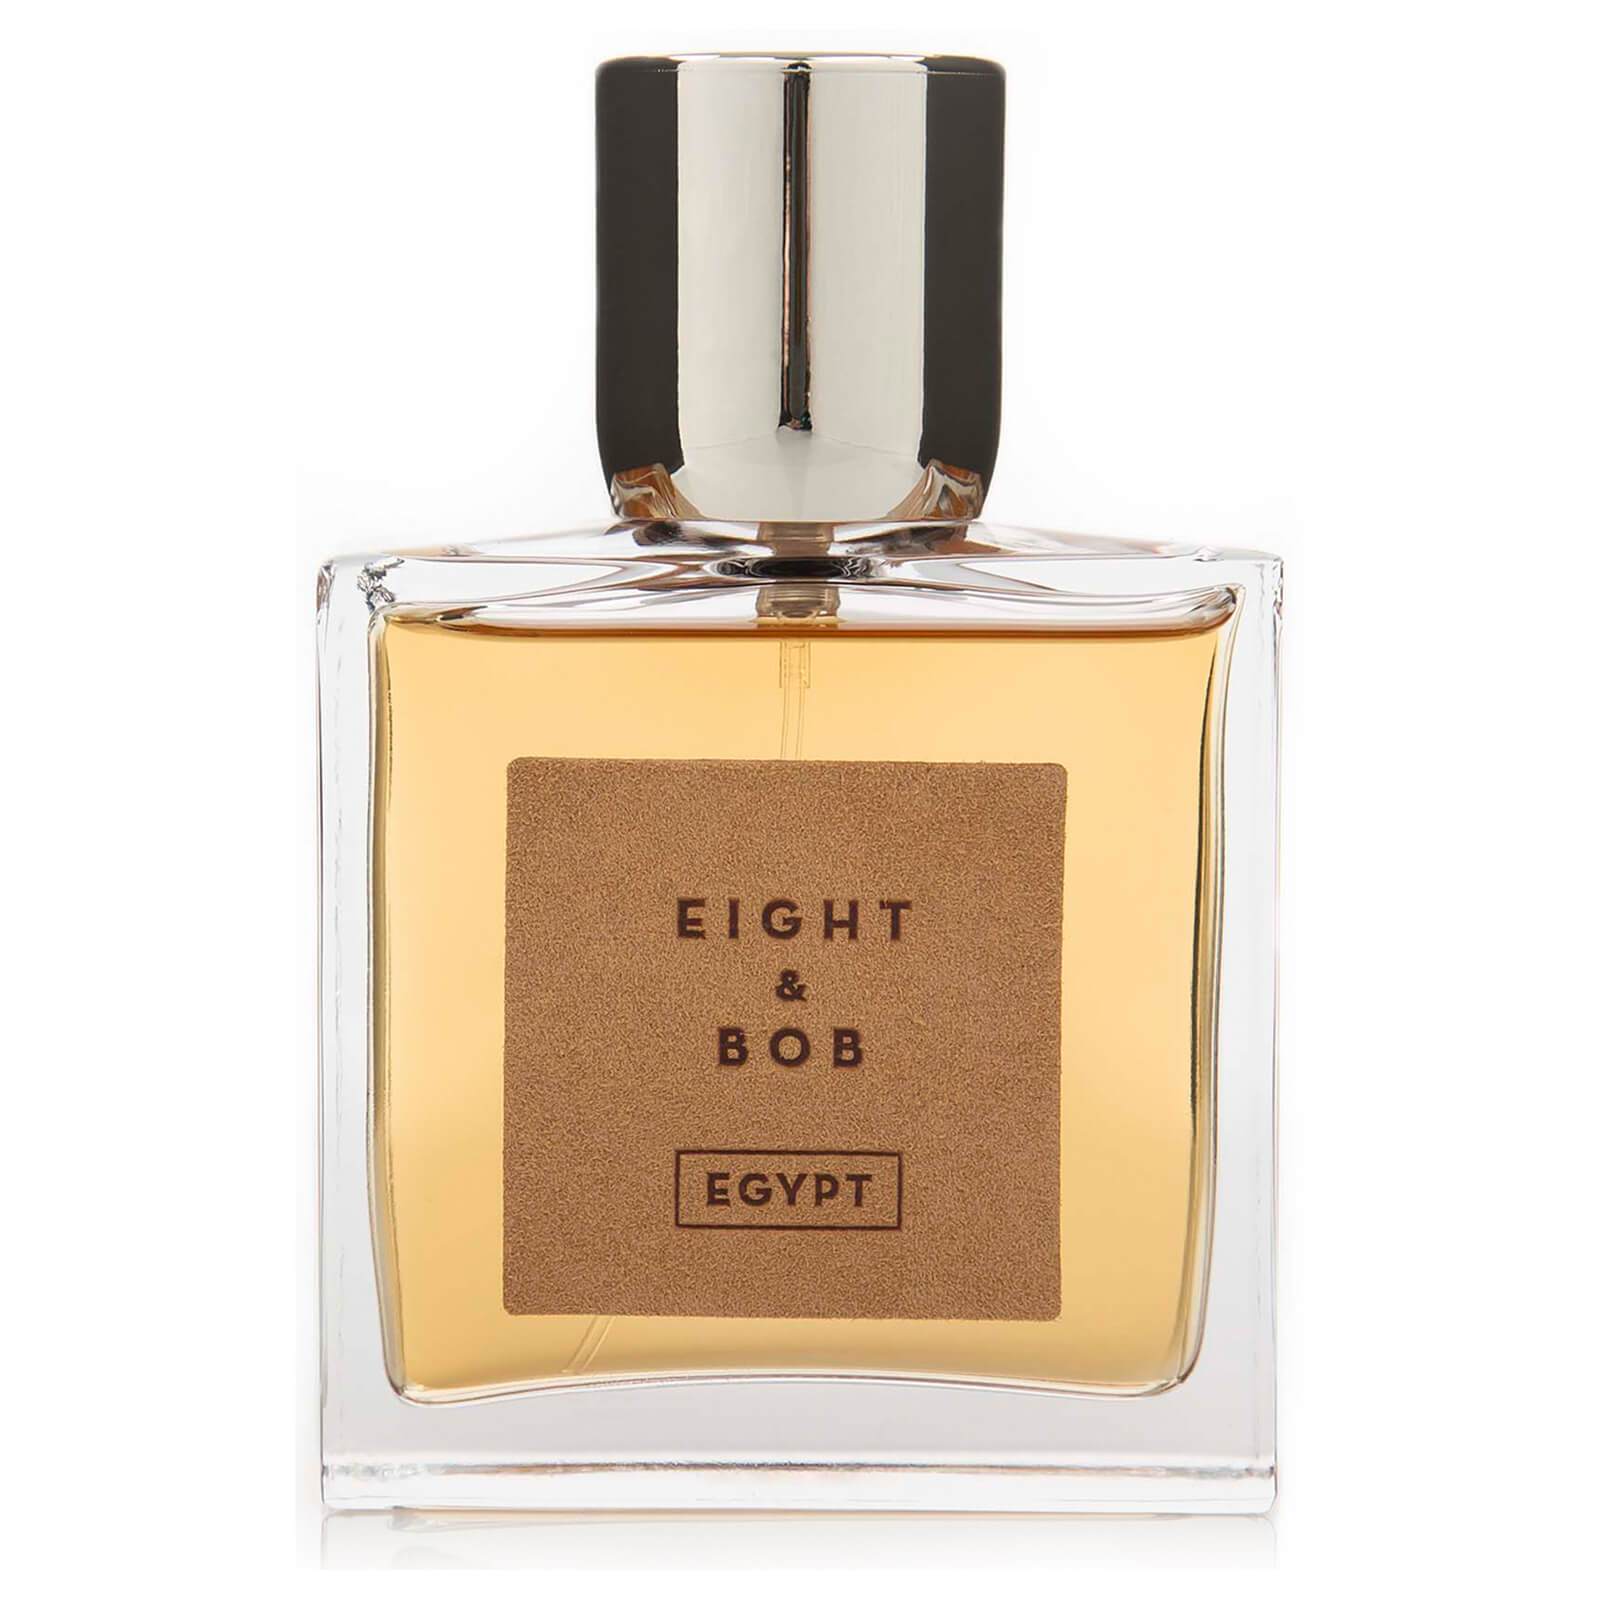 Eight & Bob Egypt Eau de Parfum 100ml Vapo